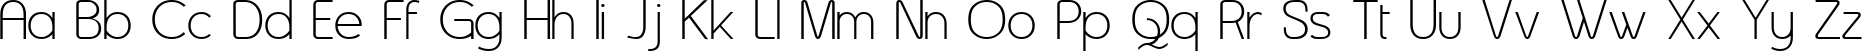 Пример написания английского алфавита шрифтом Asenine